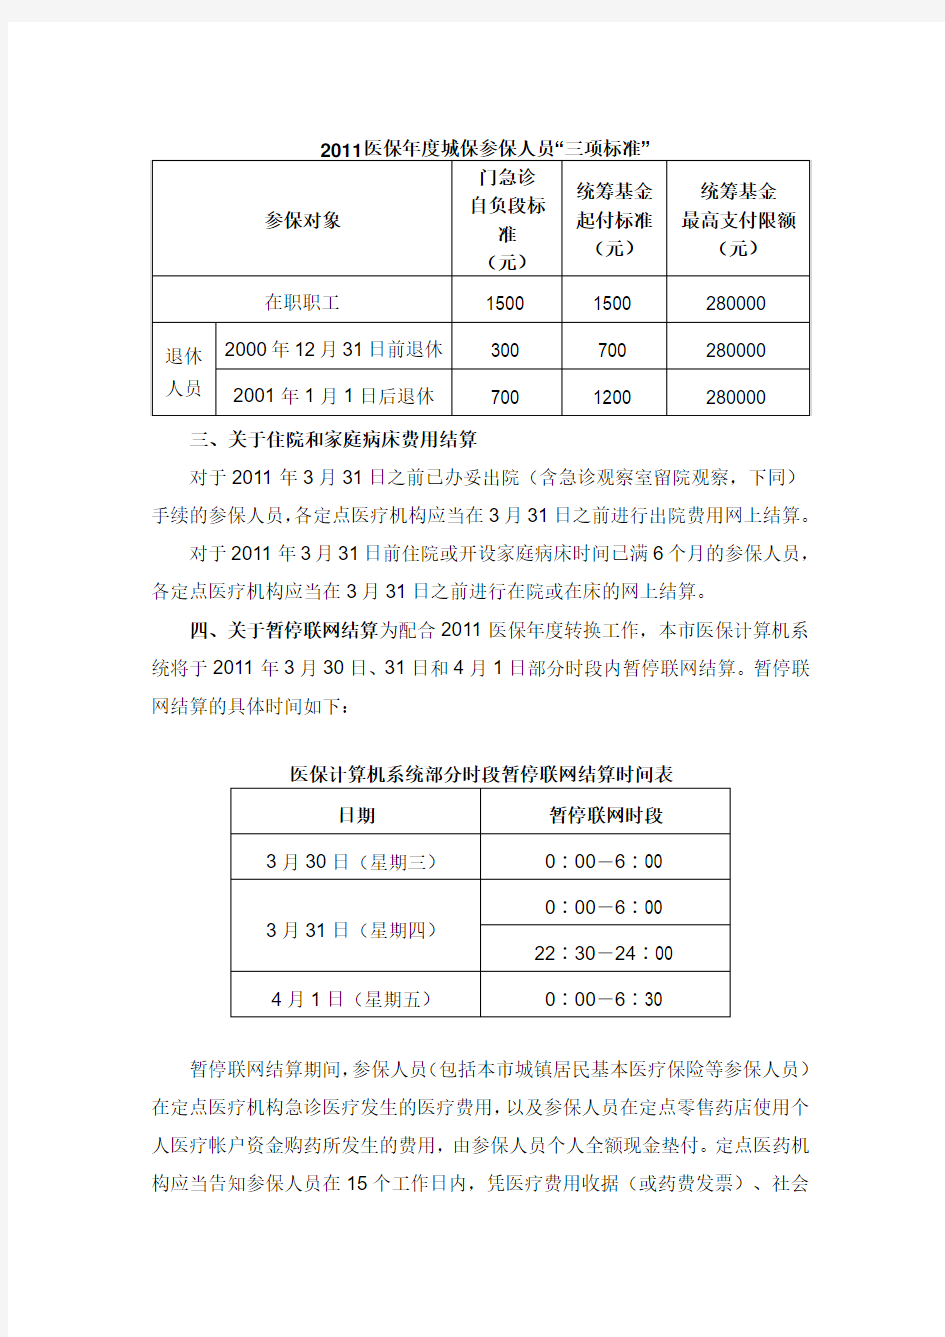 上海市人力资源和社会保障局、上海市医疗保险办公室关于本市基本医疗保险2011医保年度转换有关事项的通知